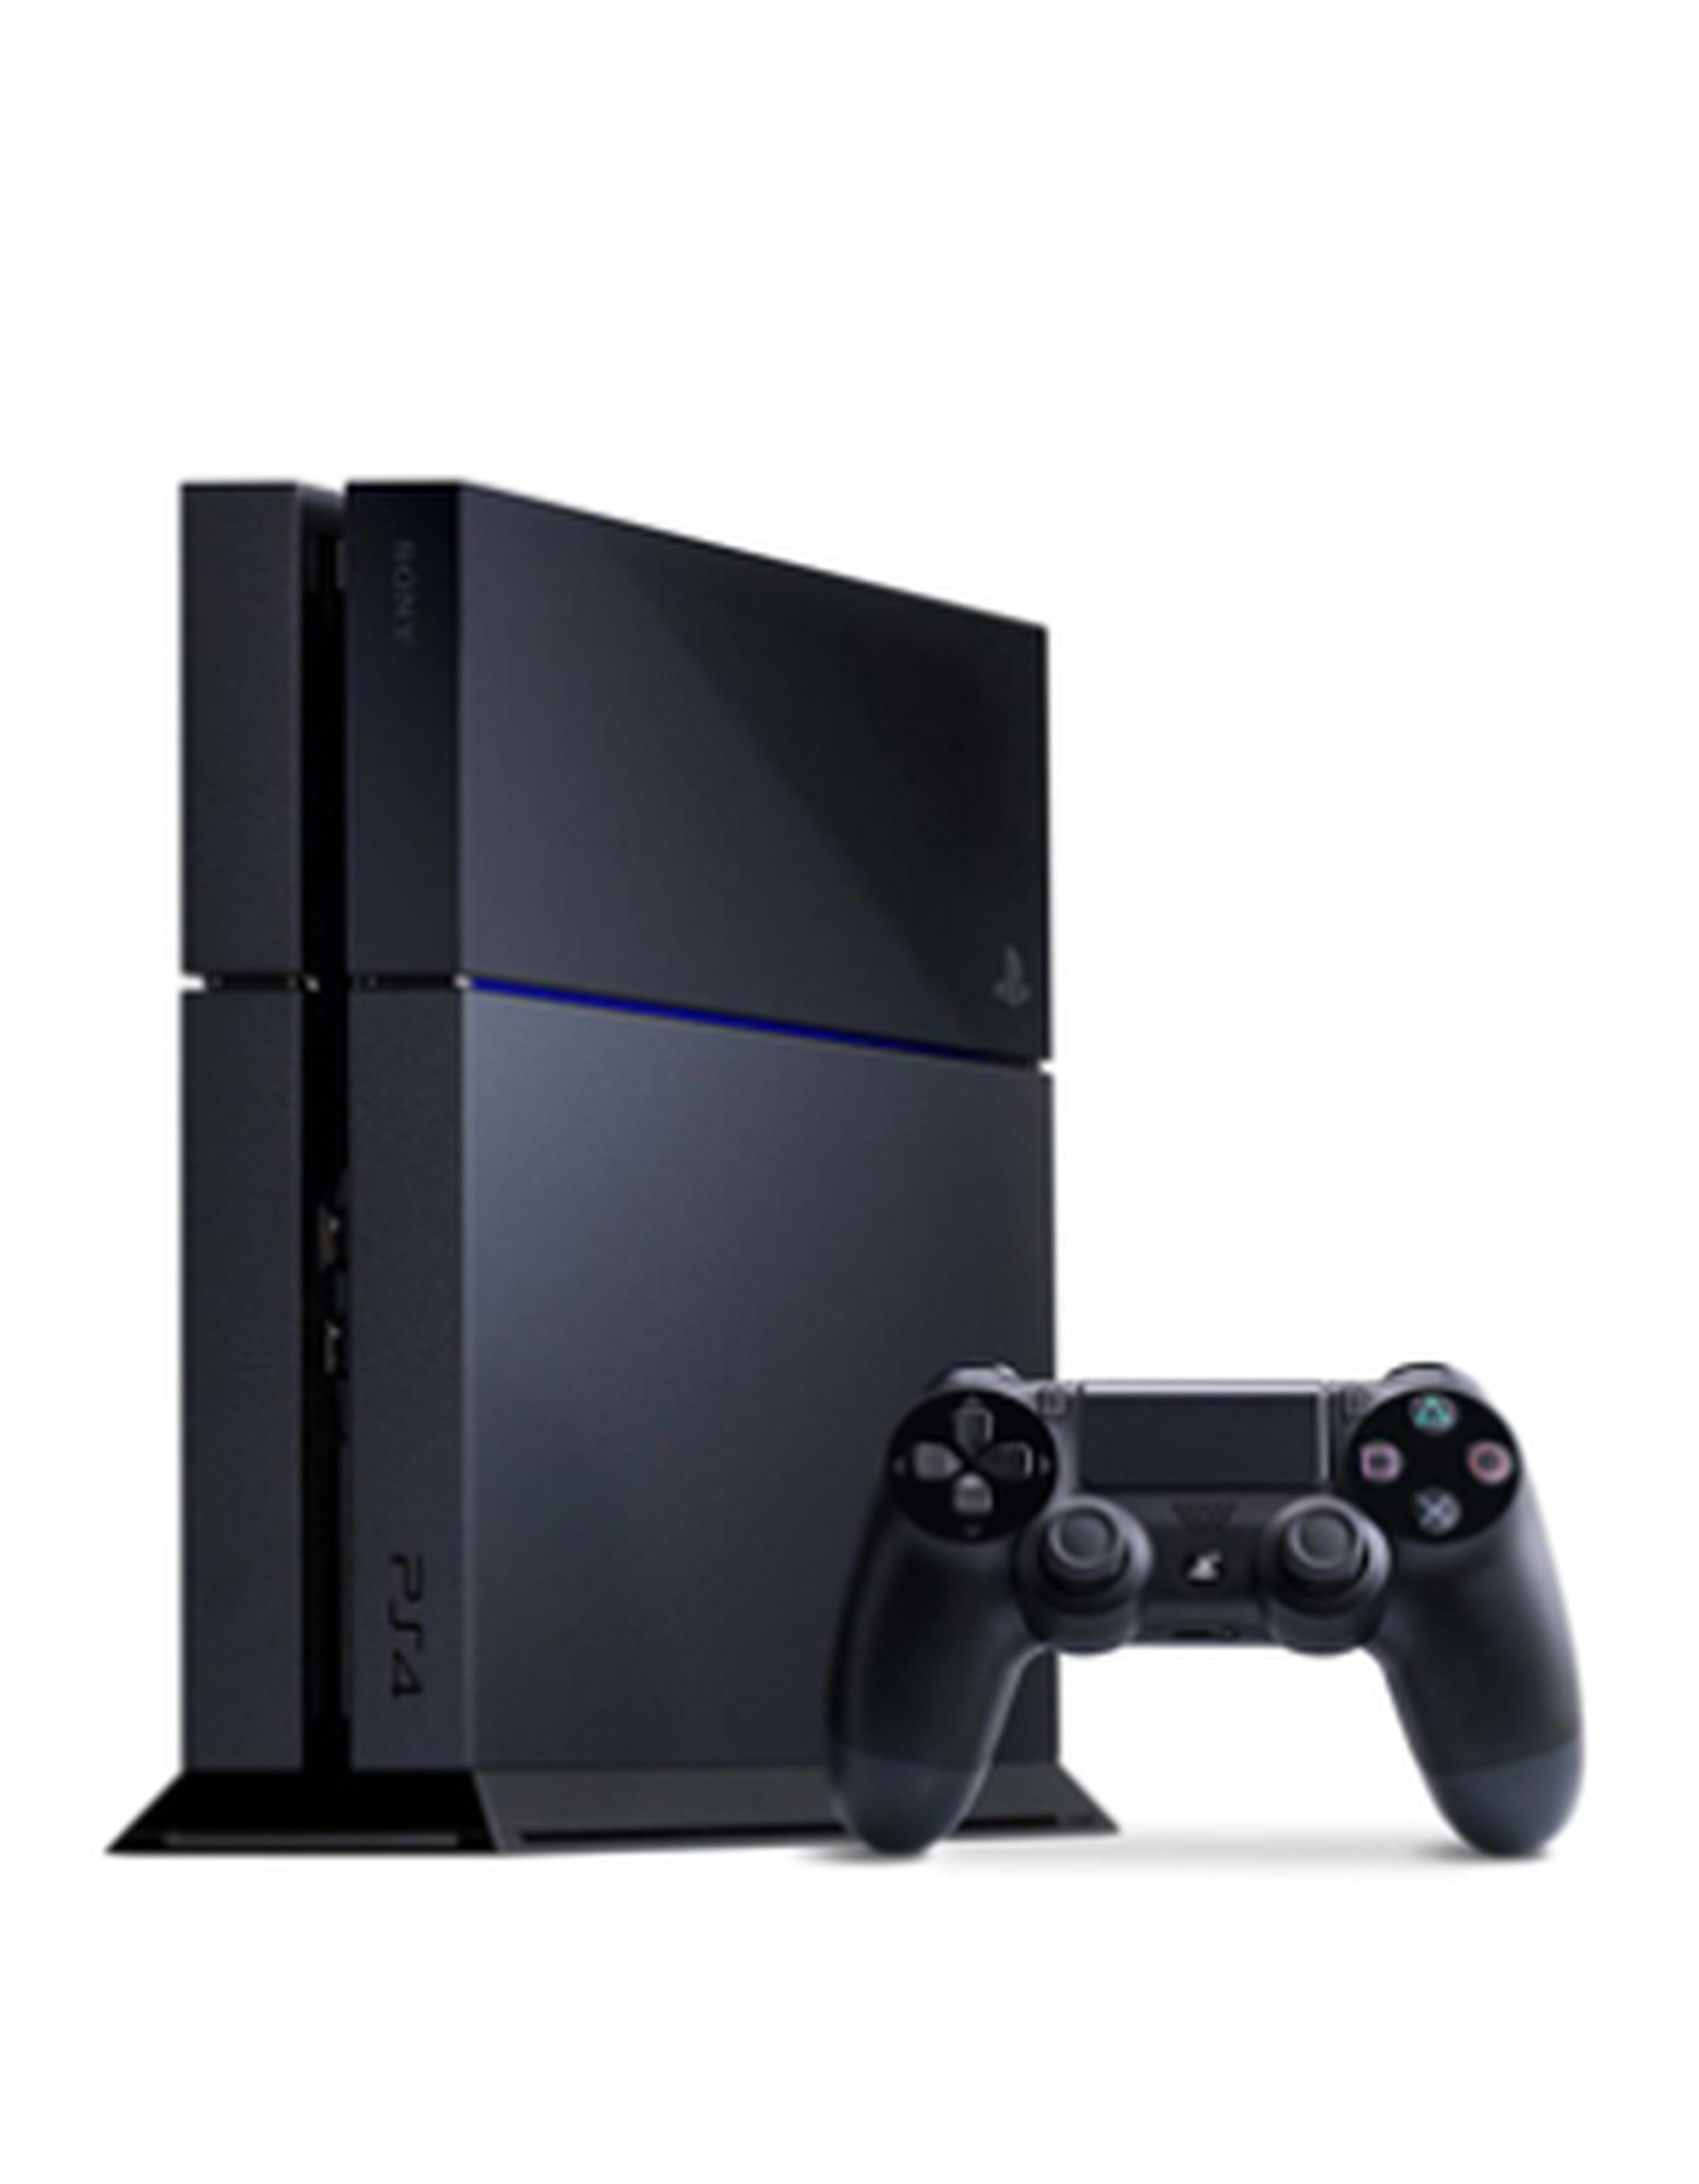 Sony lanzará la próxima semana una versión más delgada y ligera de su consola PlayStation 4. (Facebook)